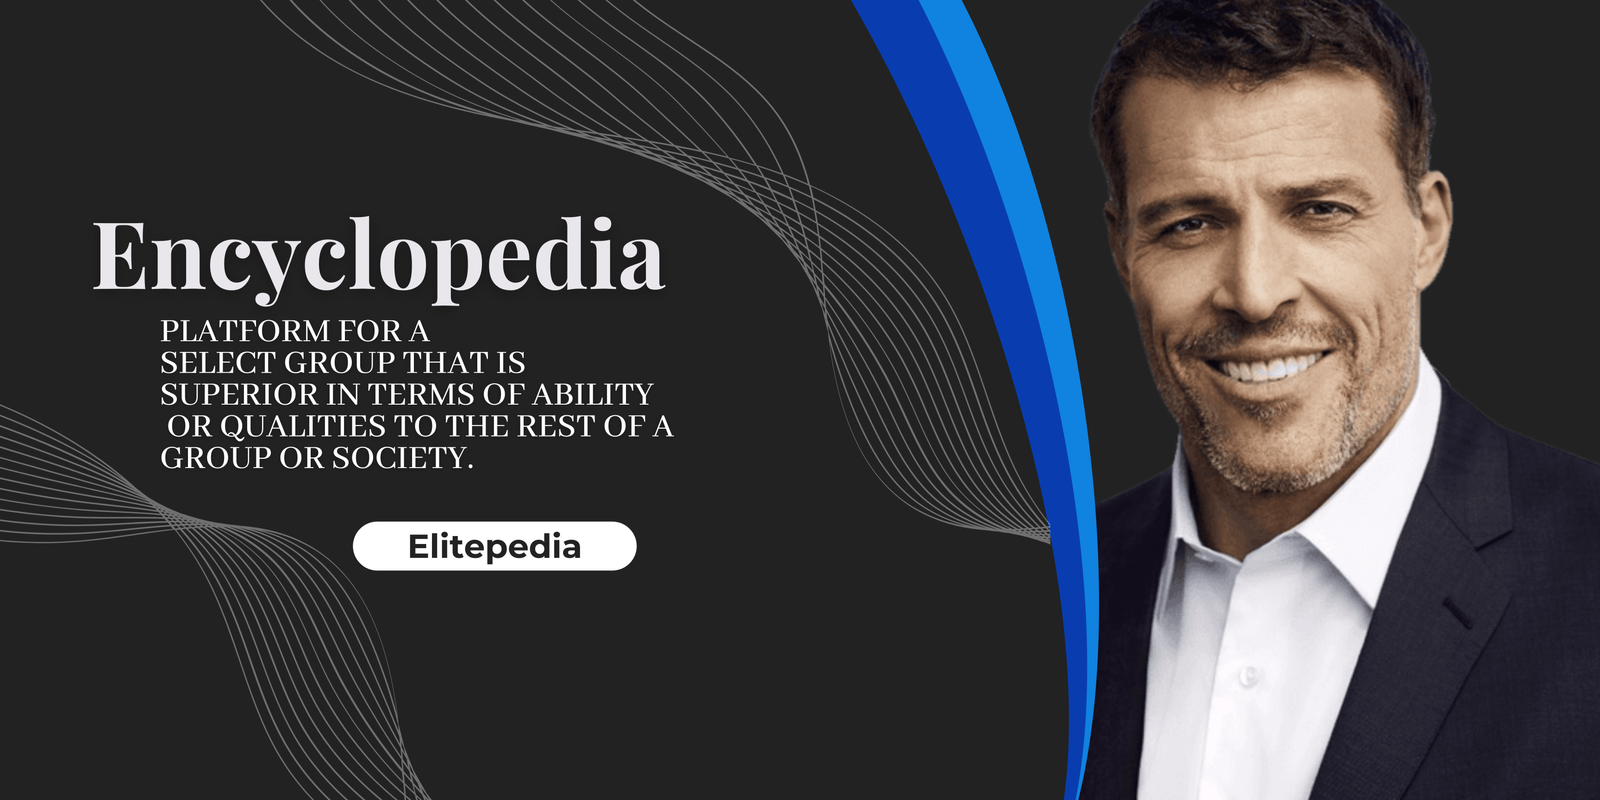 Elitepedia